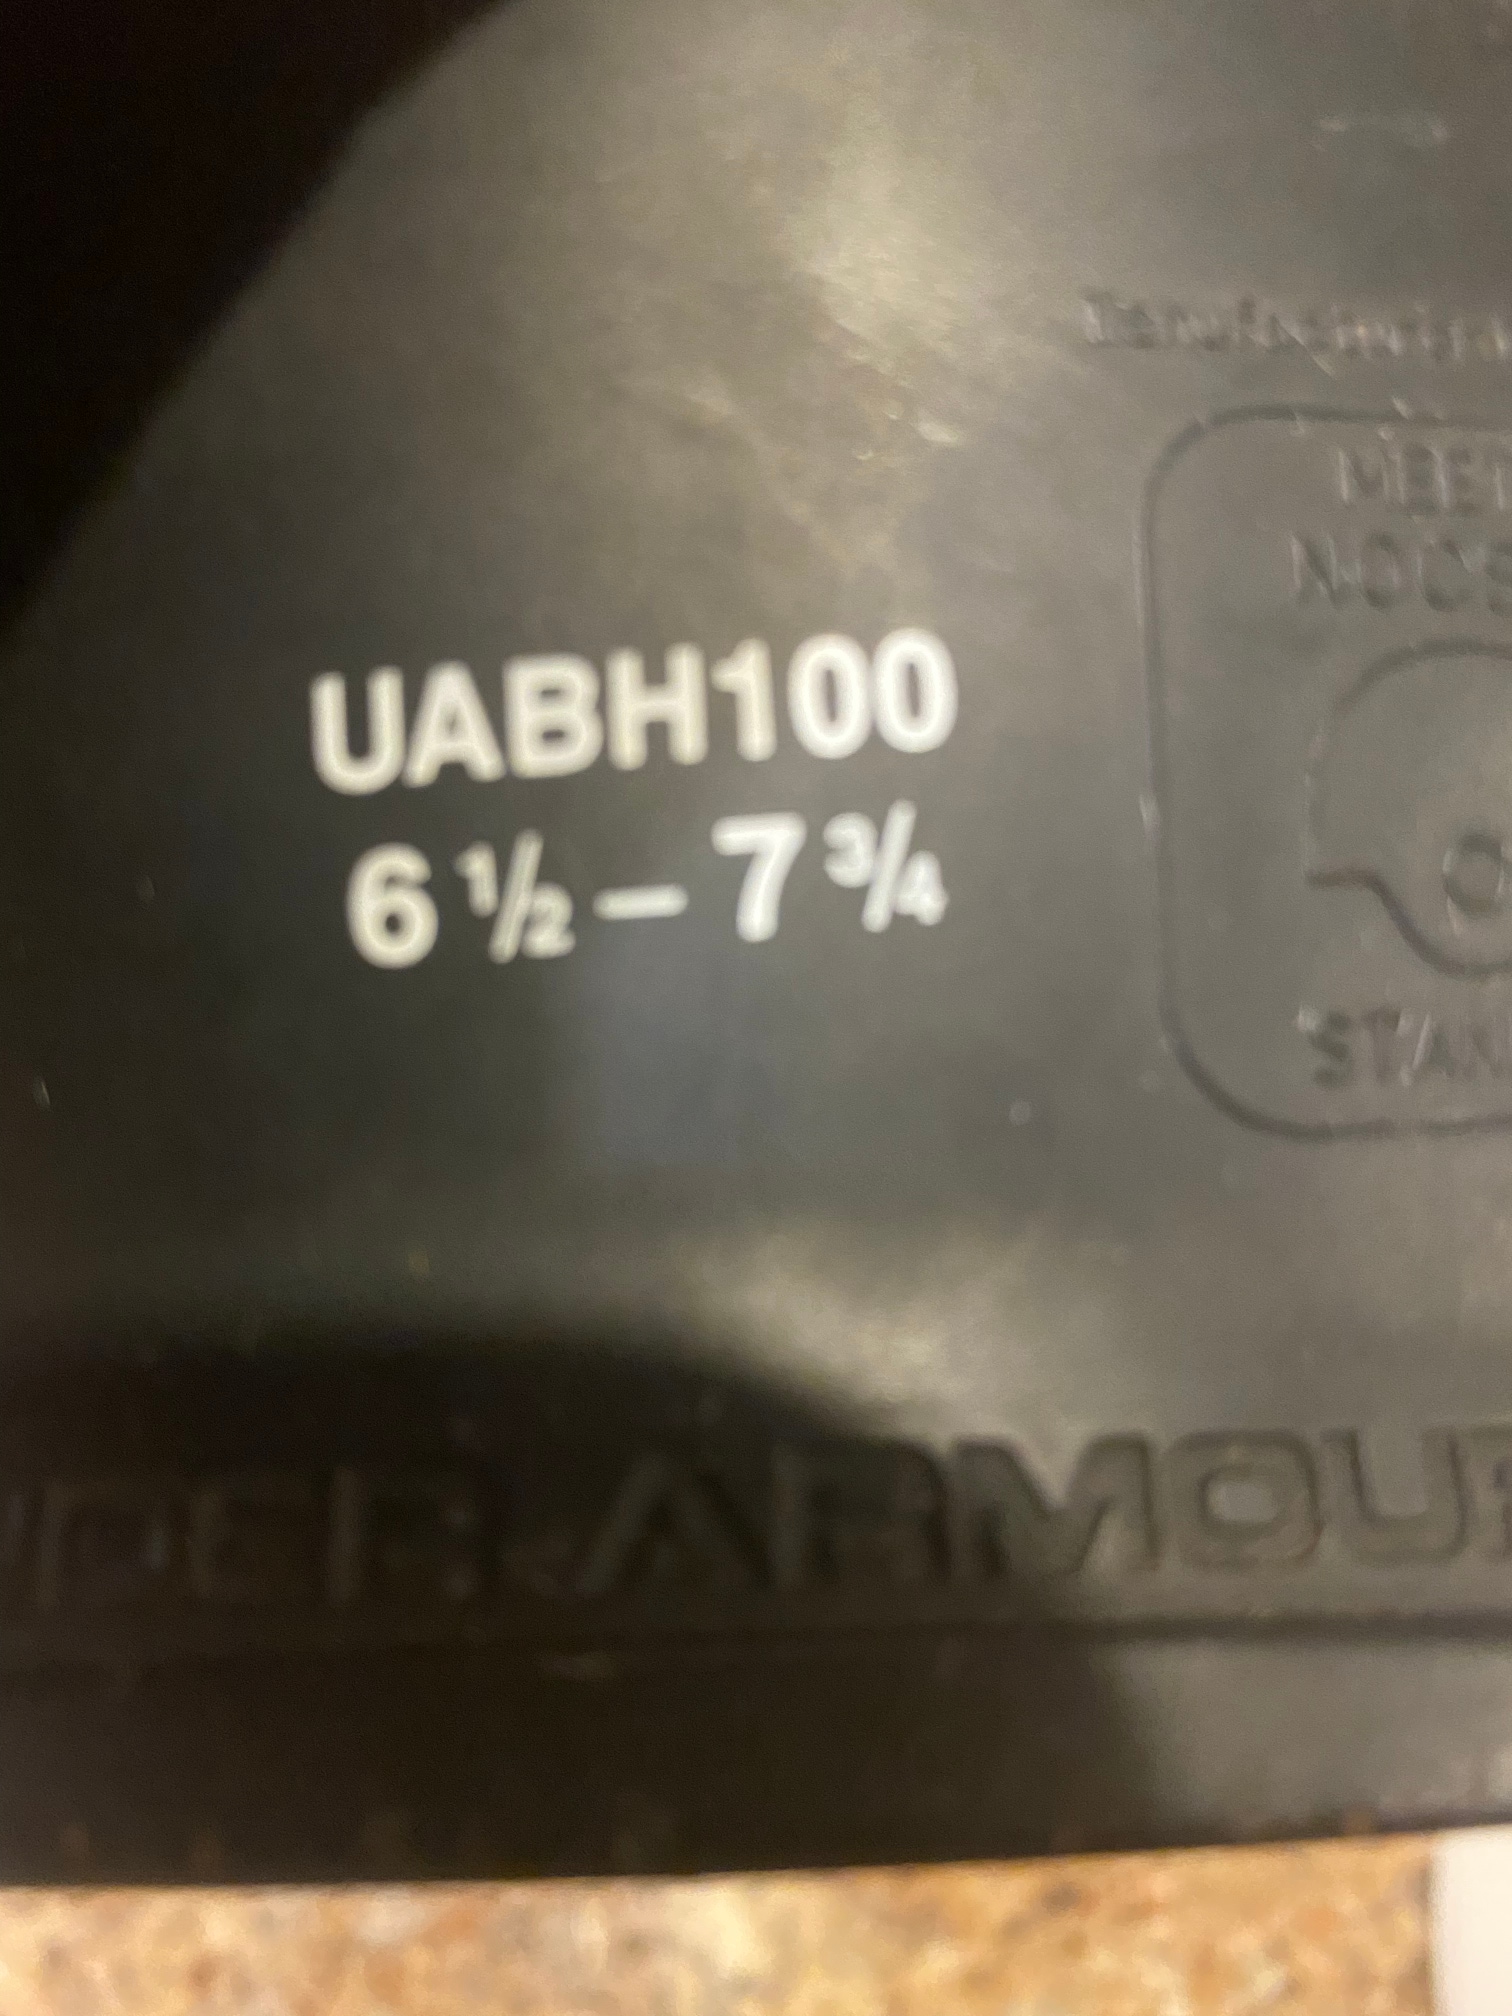 Used Large Under Armour UABH100 Batting Helmet